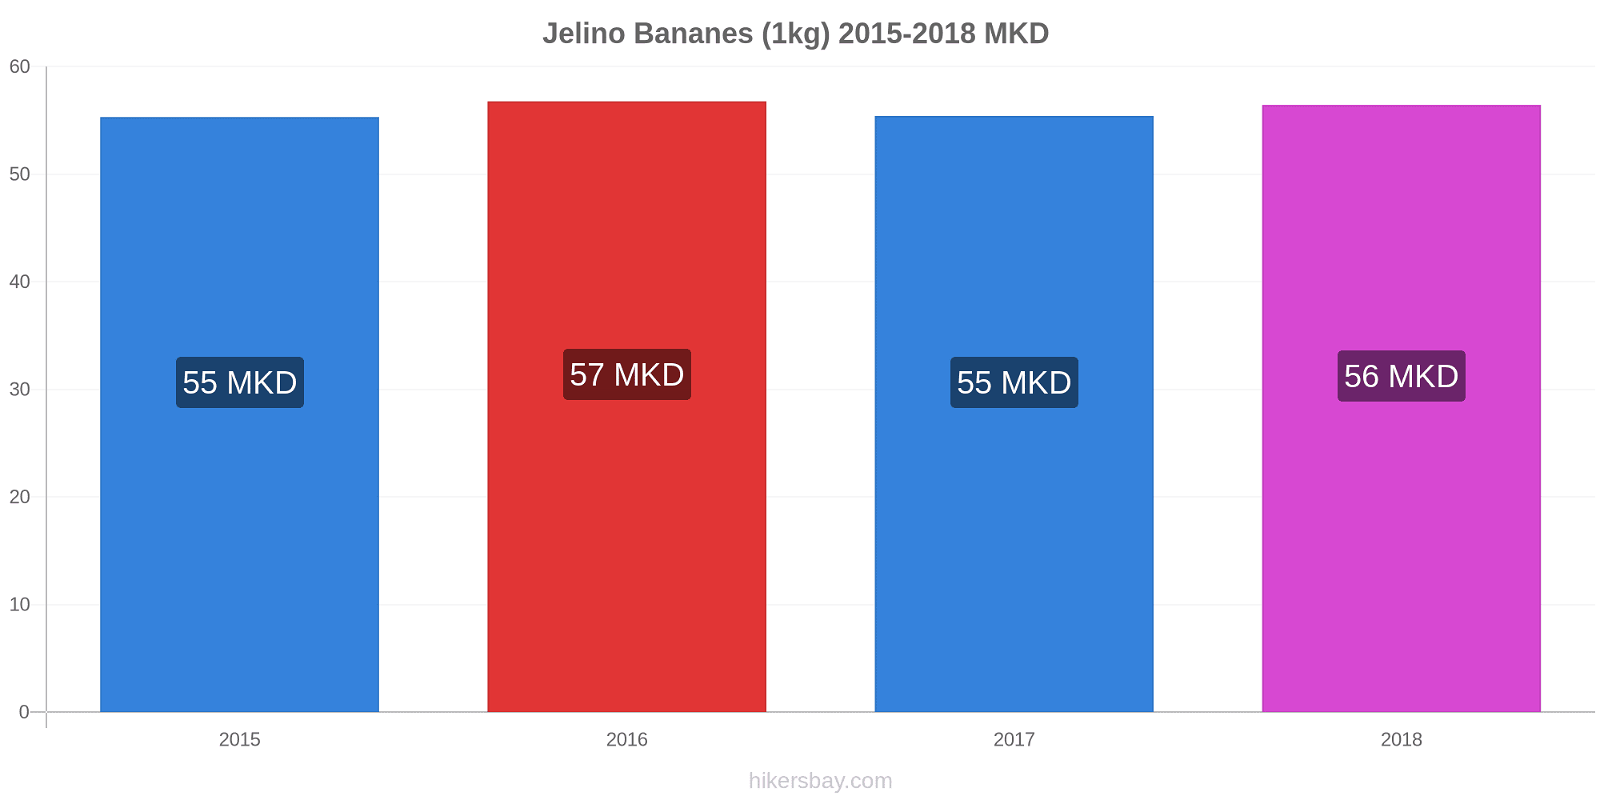 Jelino changements de prix Bananes (1kg) hikersbay.com